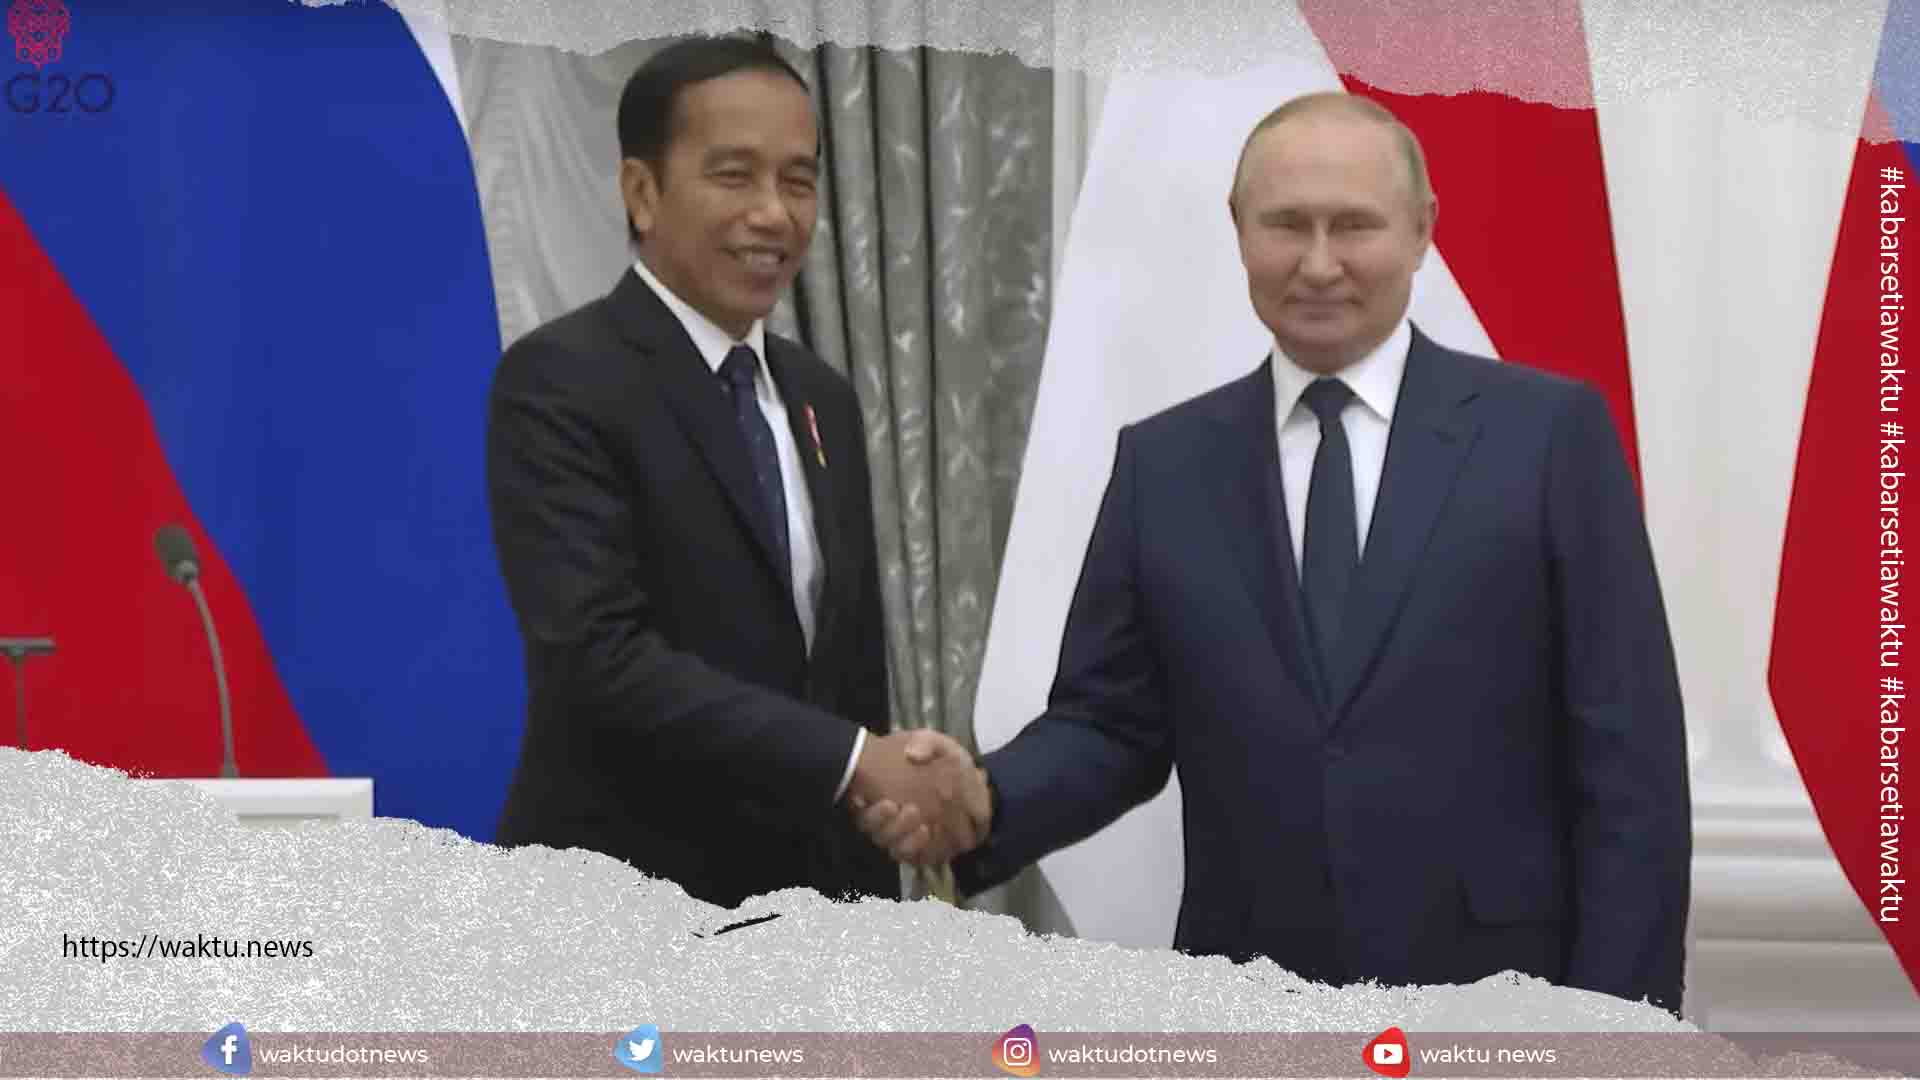 Hasil Pertemuan Presiden Jokowi dan Vladimir Putin